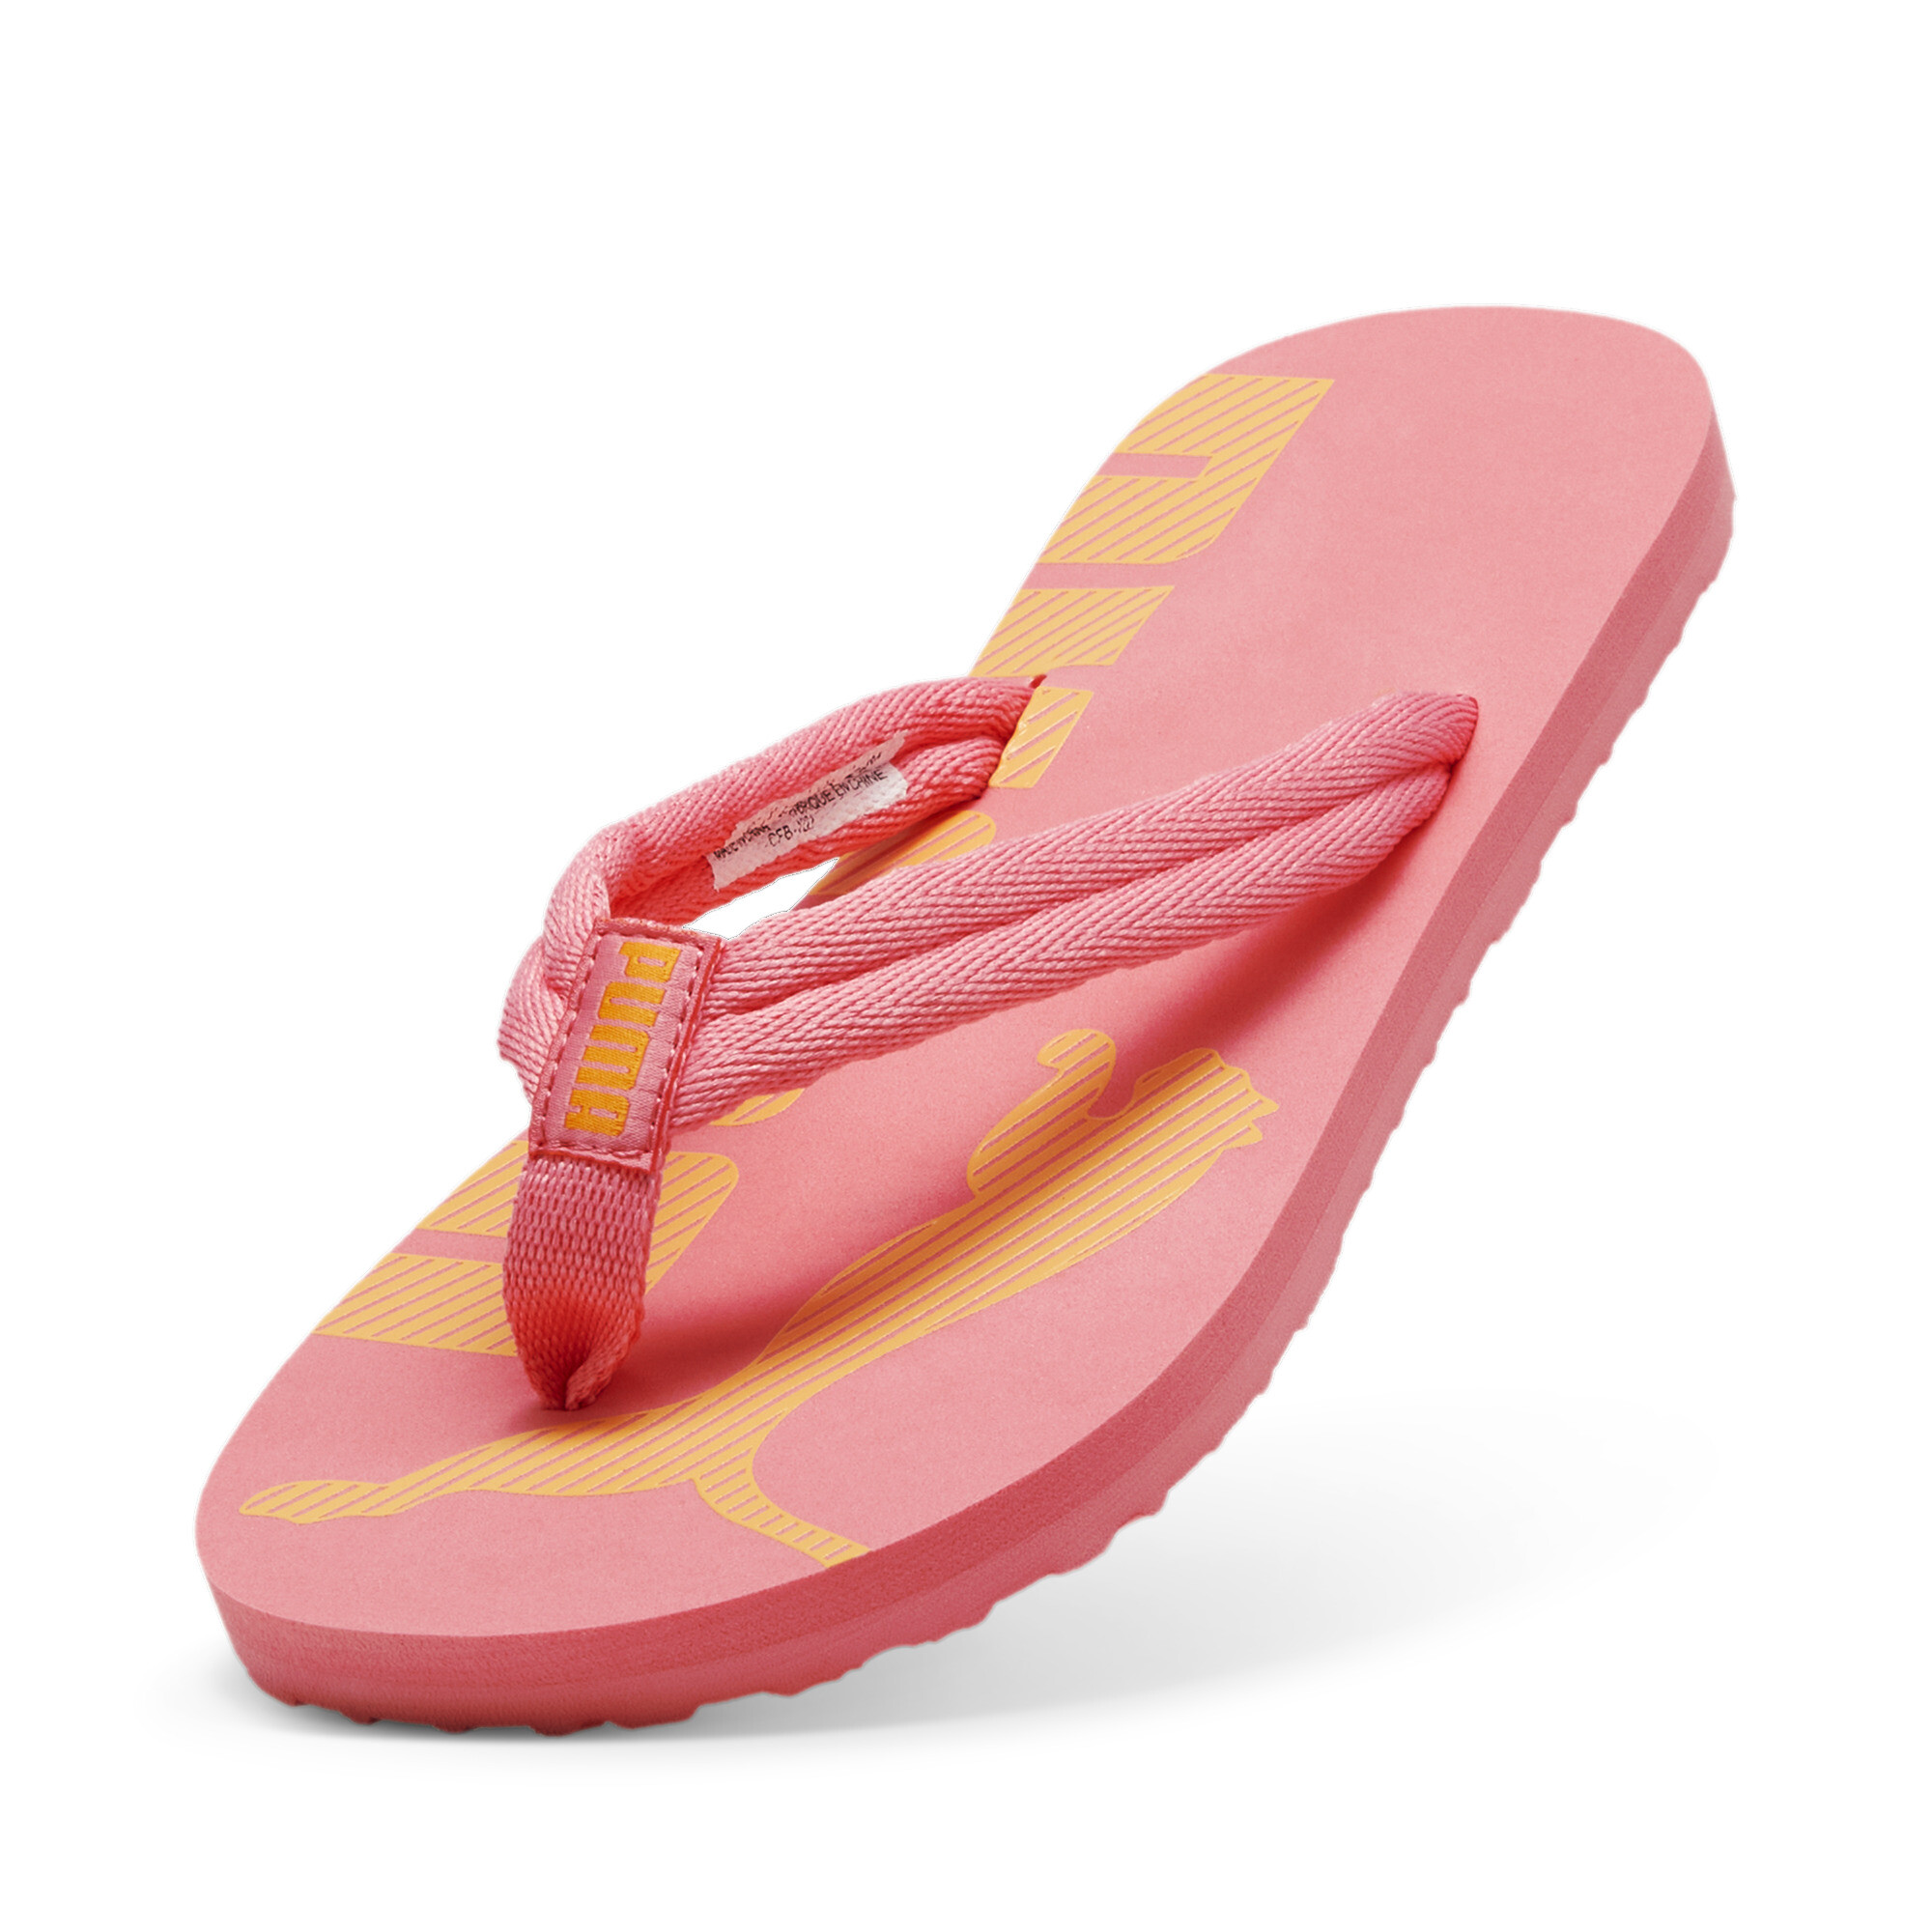 Men's PUMA Epic Flip V2 Sandals In Pink, Size EU 42